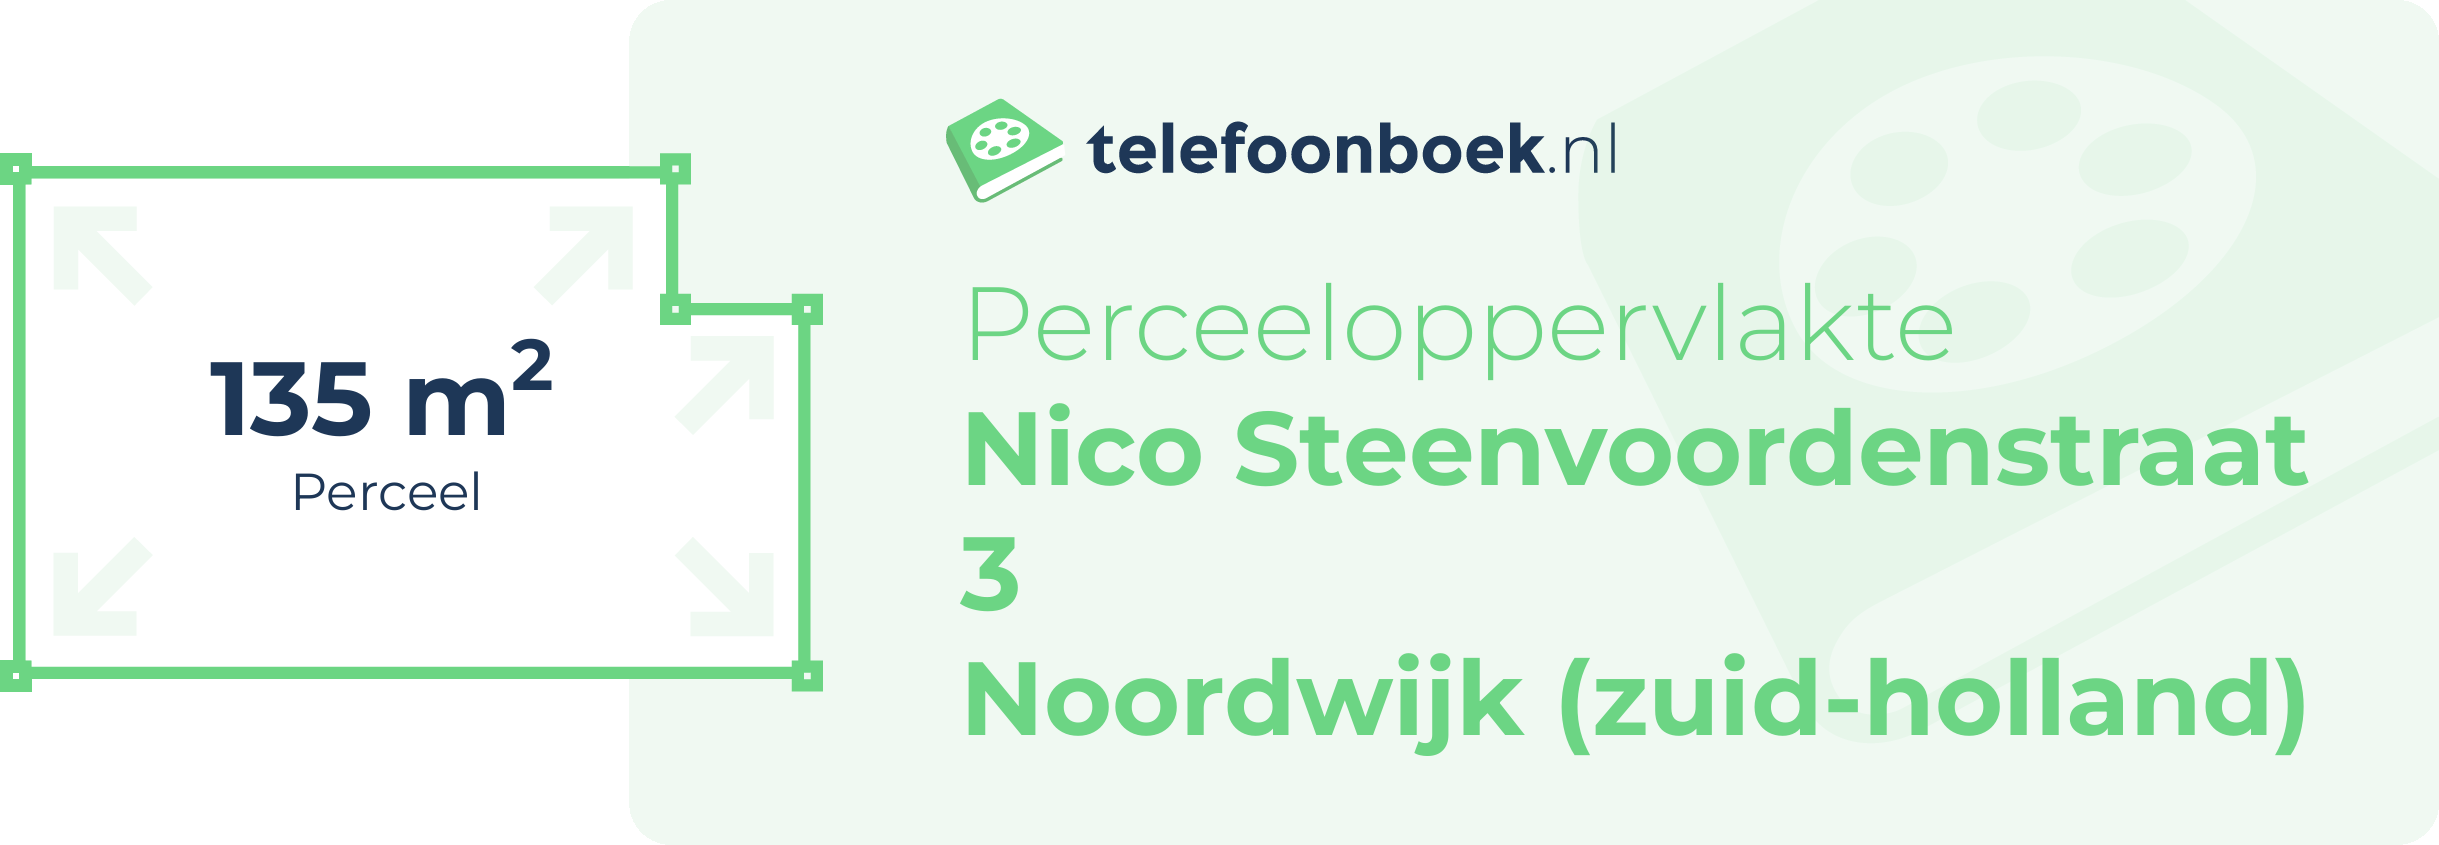 Perceeloppervlakte Nico Steenvoordenstraat 3 Noordwijk (Zuid-Holland)